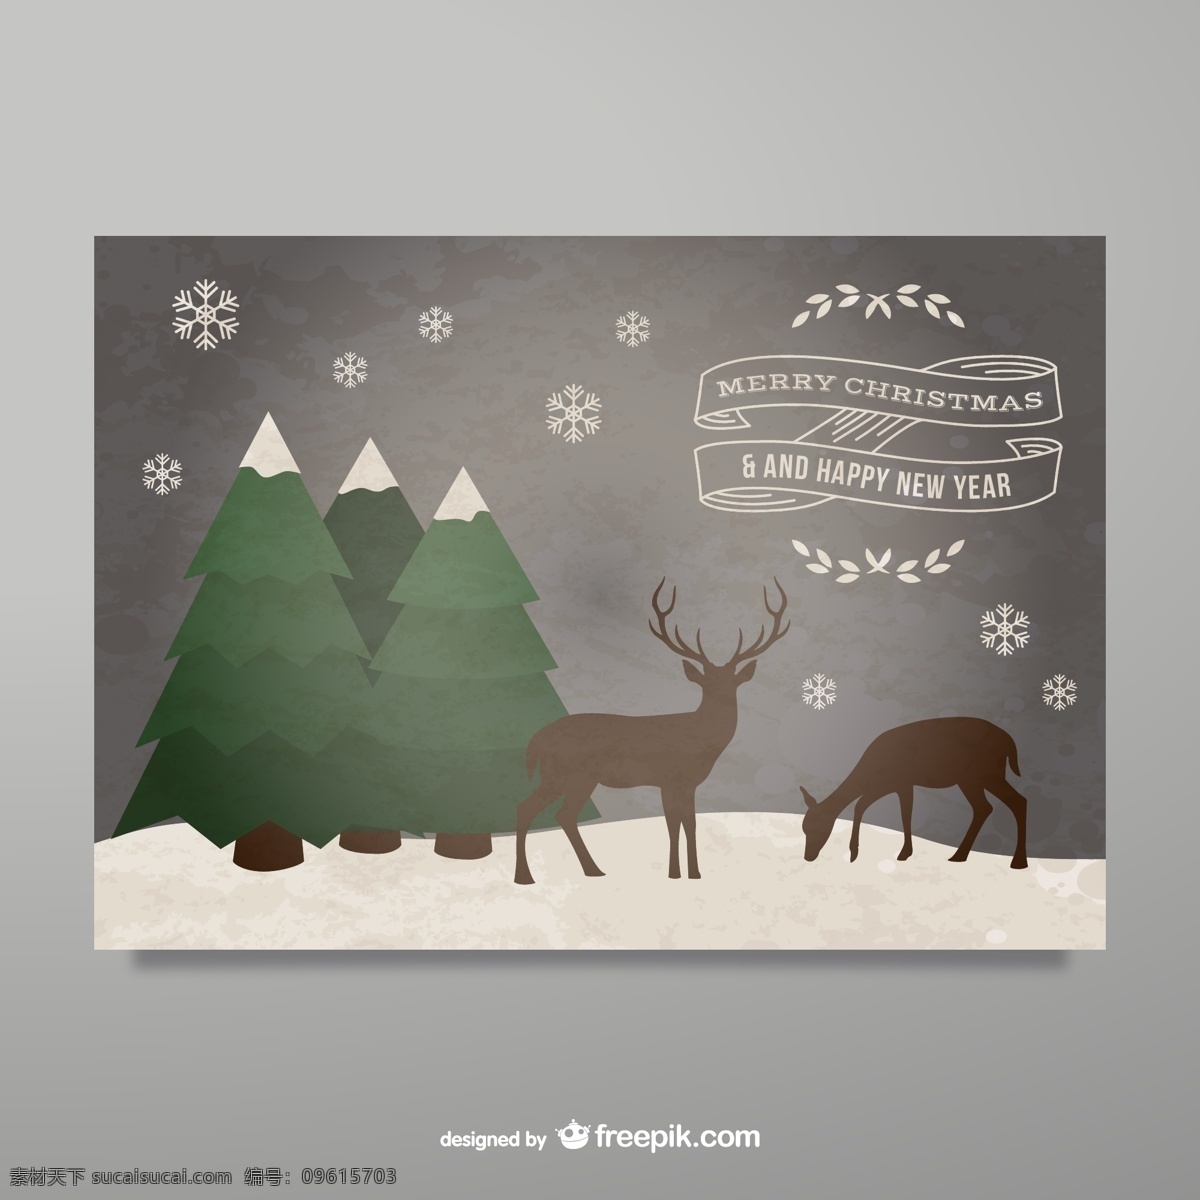 雪地 驯鹿 圣诞贺卡 矢量 雪地驯鹿插画 驯鹿圣诞贺卡 卡通麋鹿插画 圣诞树圣诞节 雪花驯鹿贺卡 节日新年圣诞 背景 文化艺术 节日庆祝